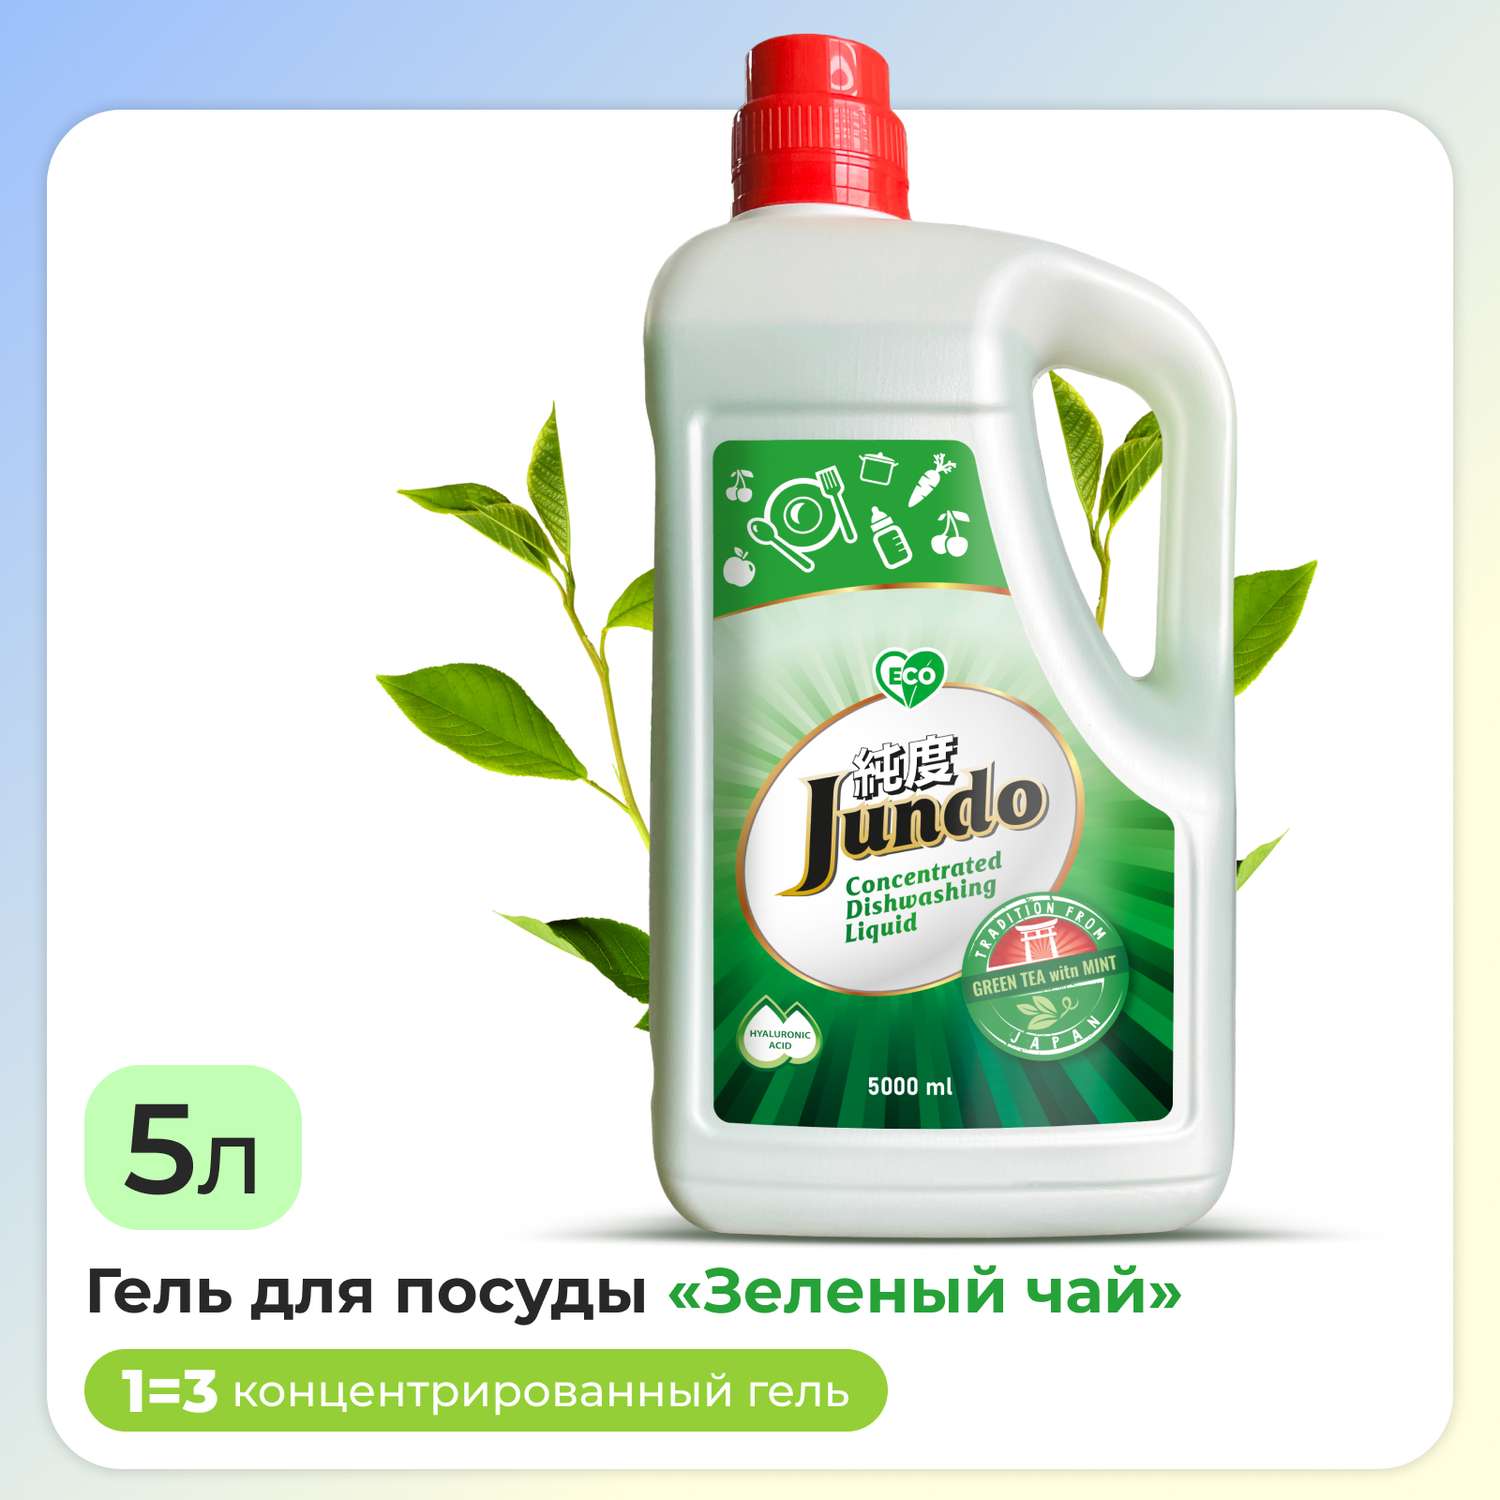 Средство для мытья посуды Jundo Green Tea With Mint концентрат 5л ЭКО-гель для мытья фруктов овощей детской посуды игрушек - фото 1